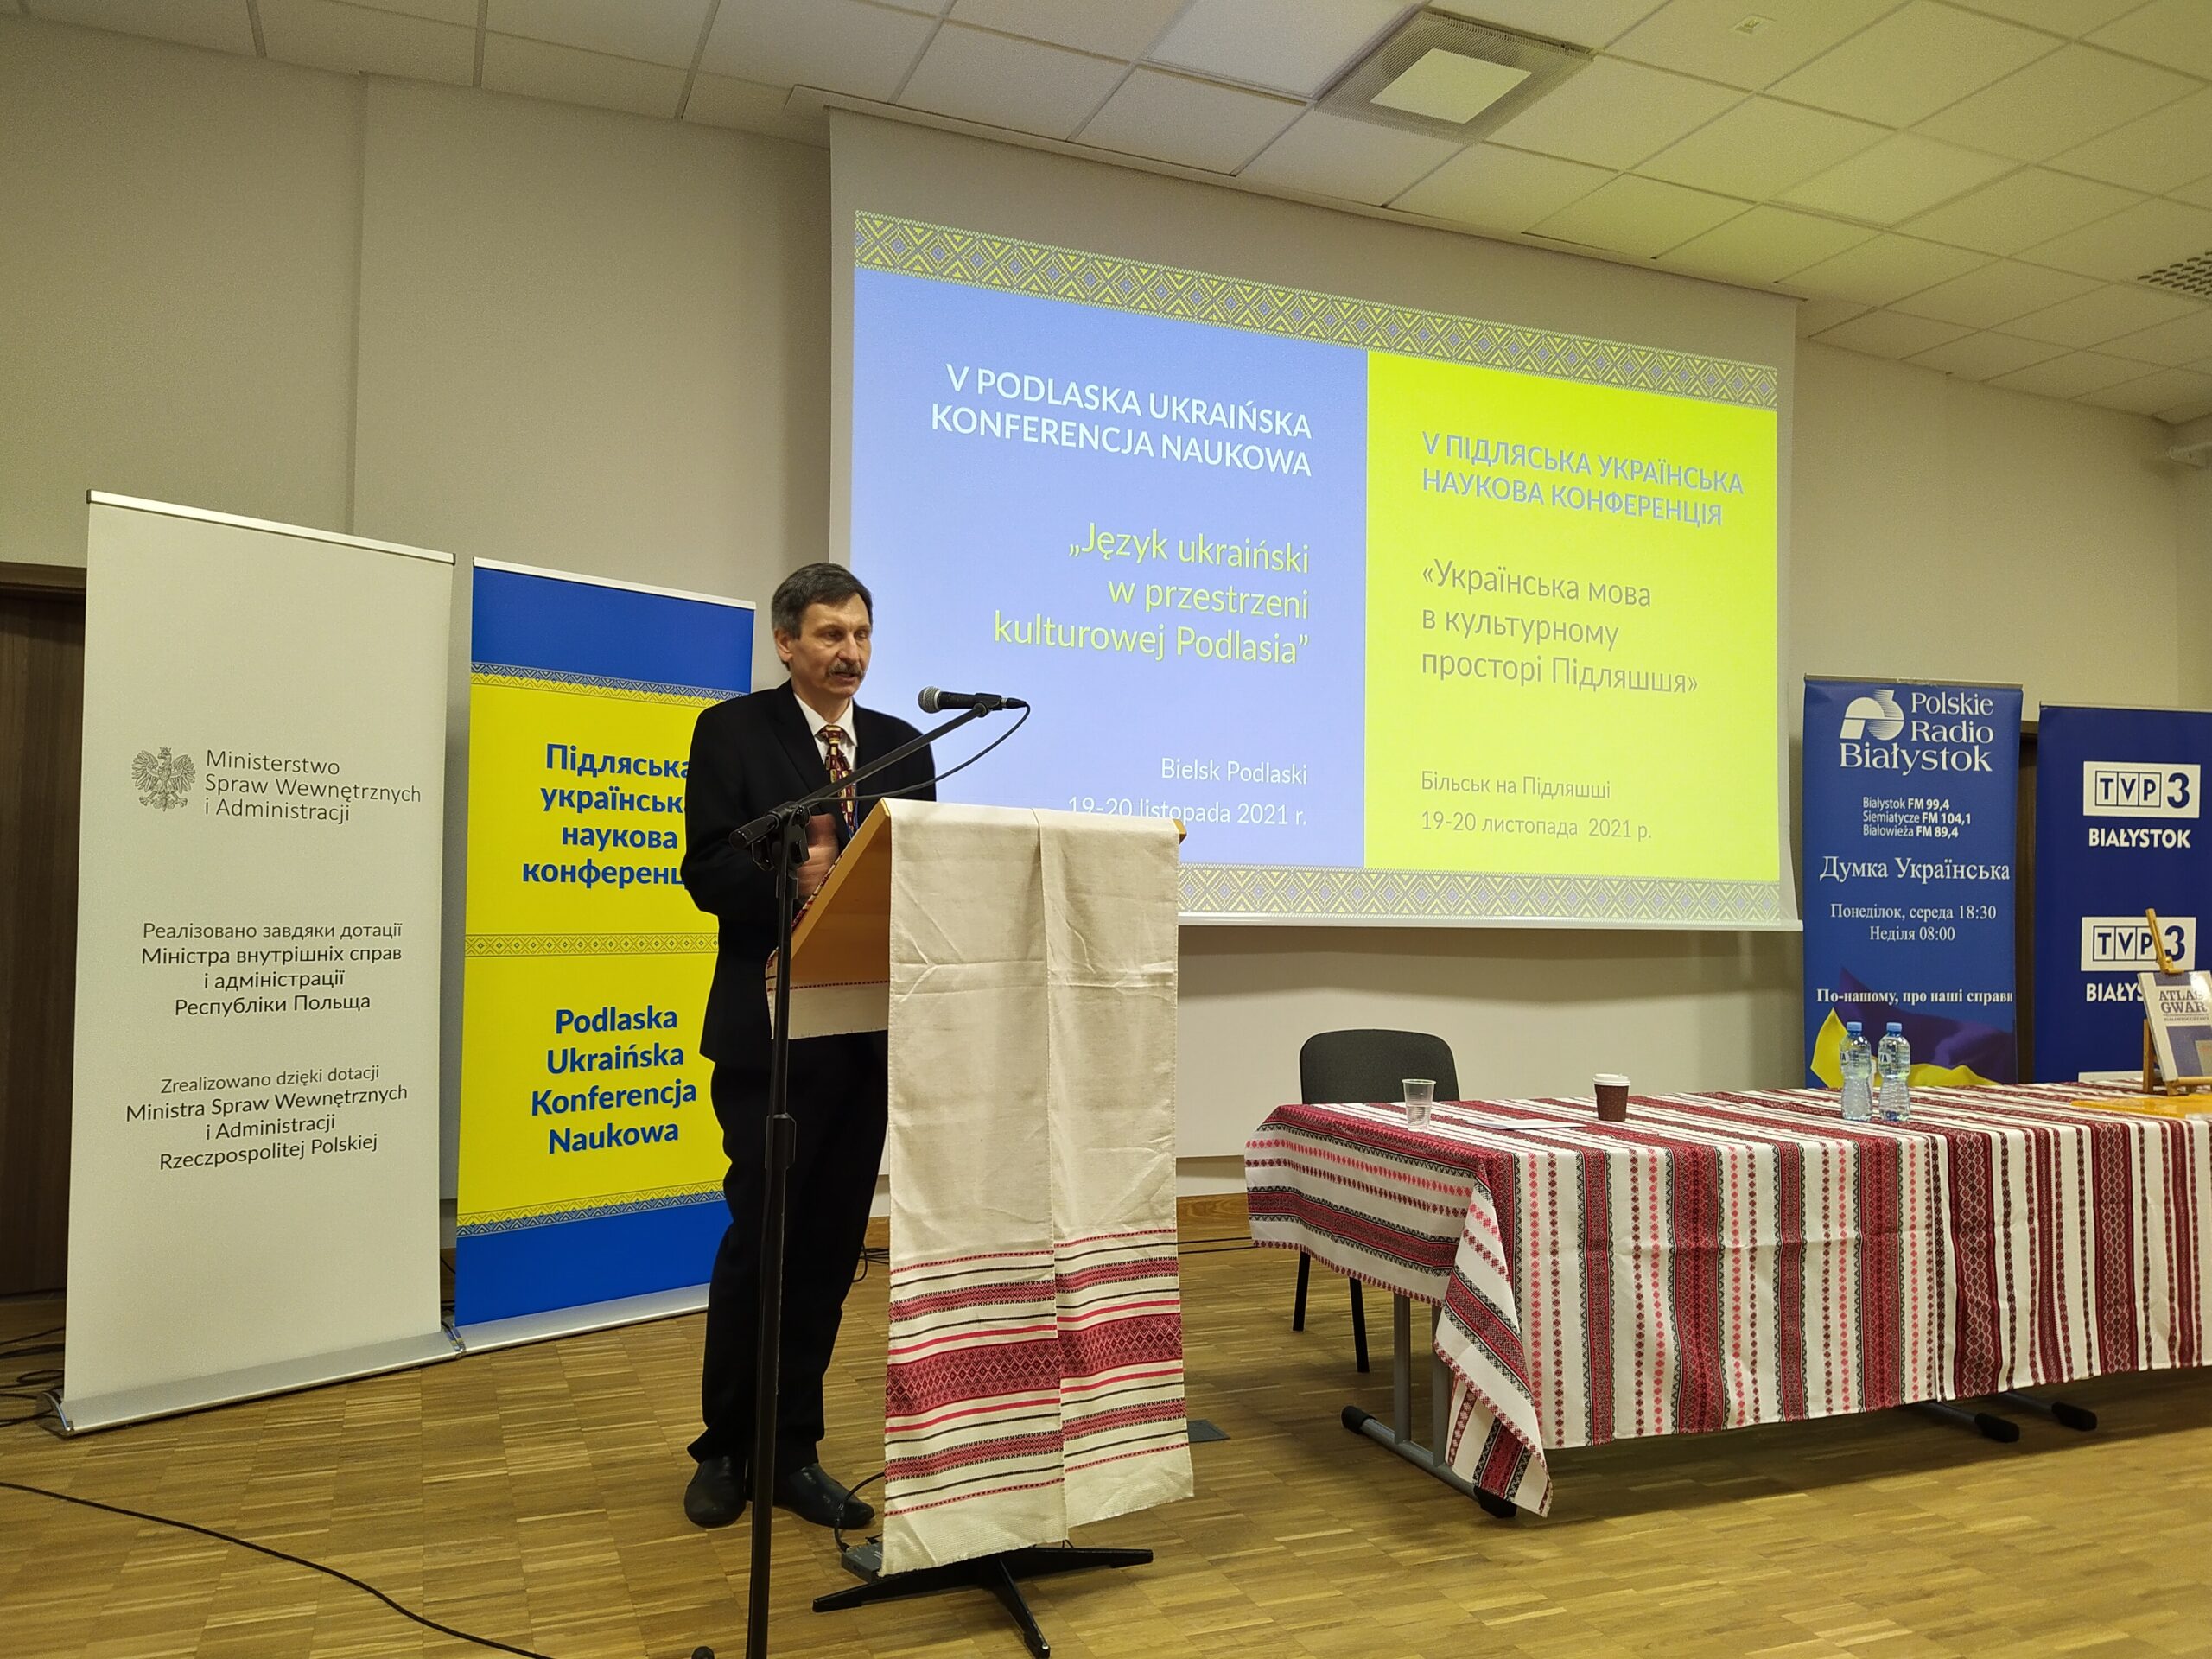 Odbyła się V Podlaska Ukraińska Konferencja Naukowa